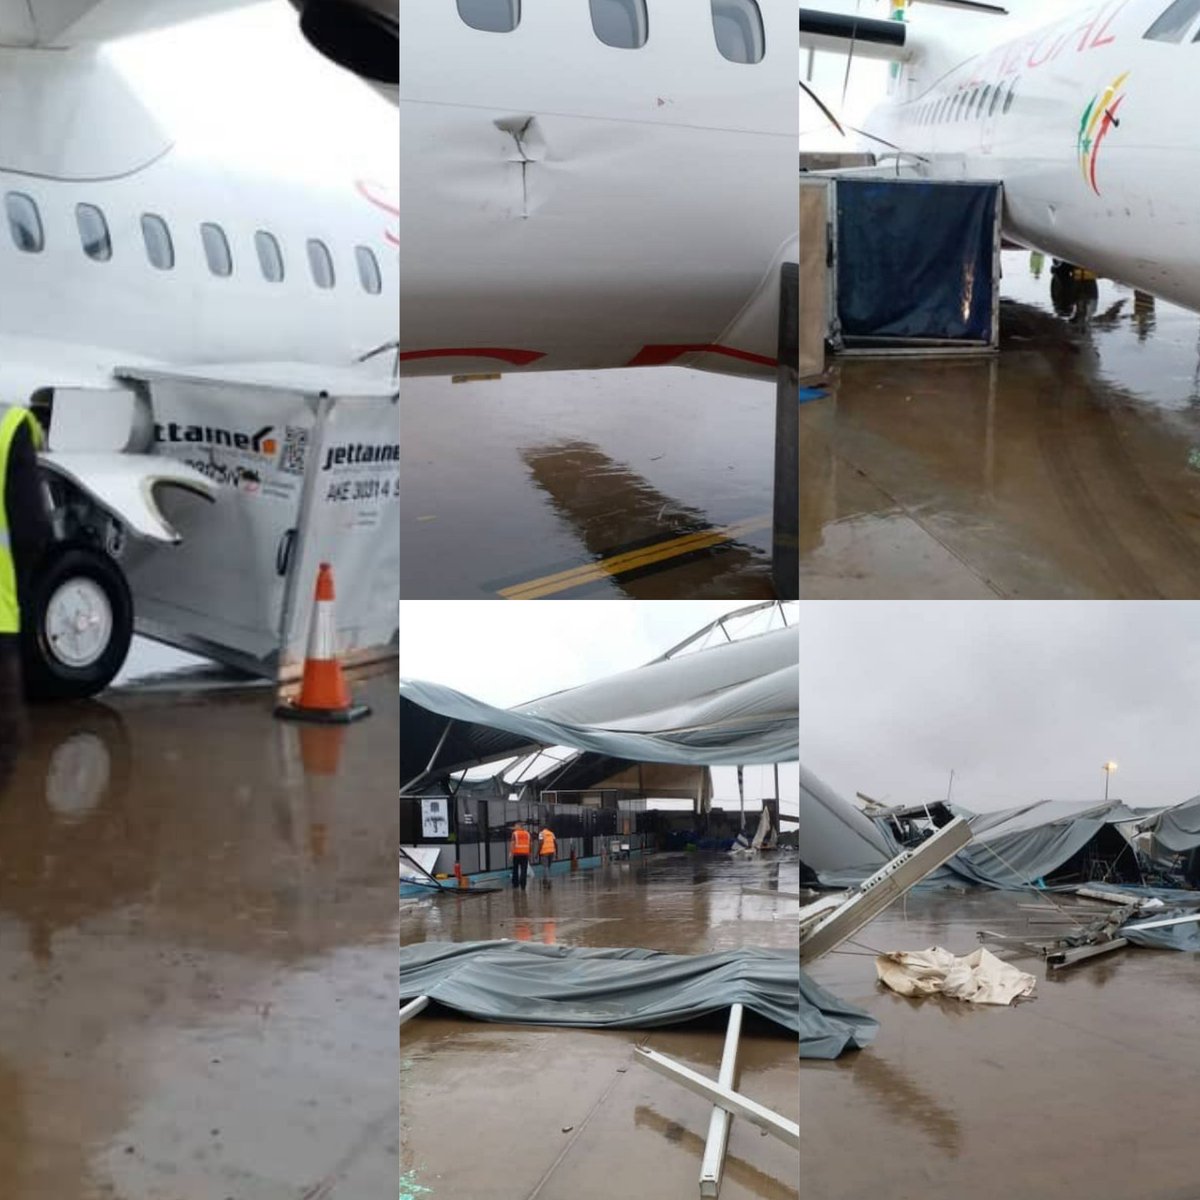 Accident à l'aéroport Charles de Gaulle de Paris: un avion Air Sénégal endommagé